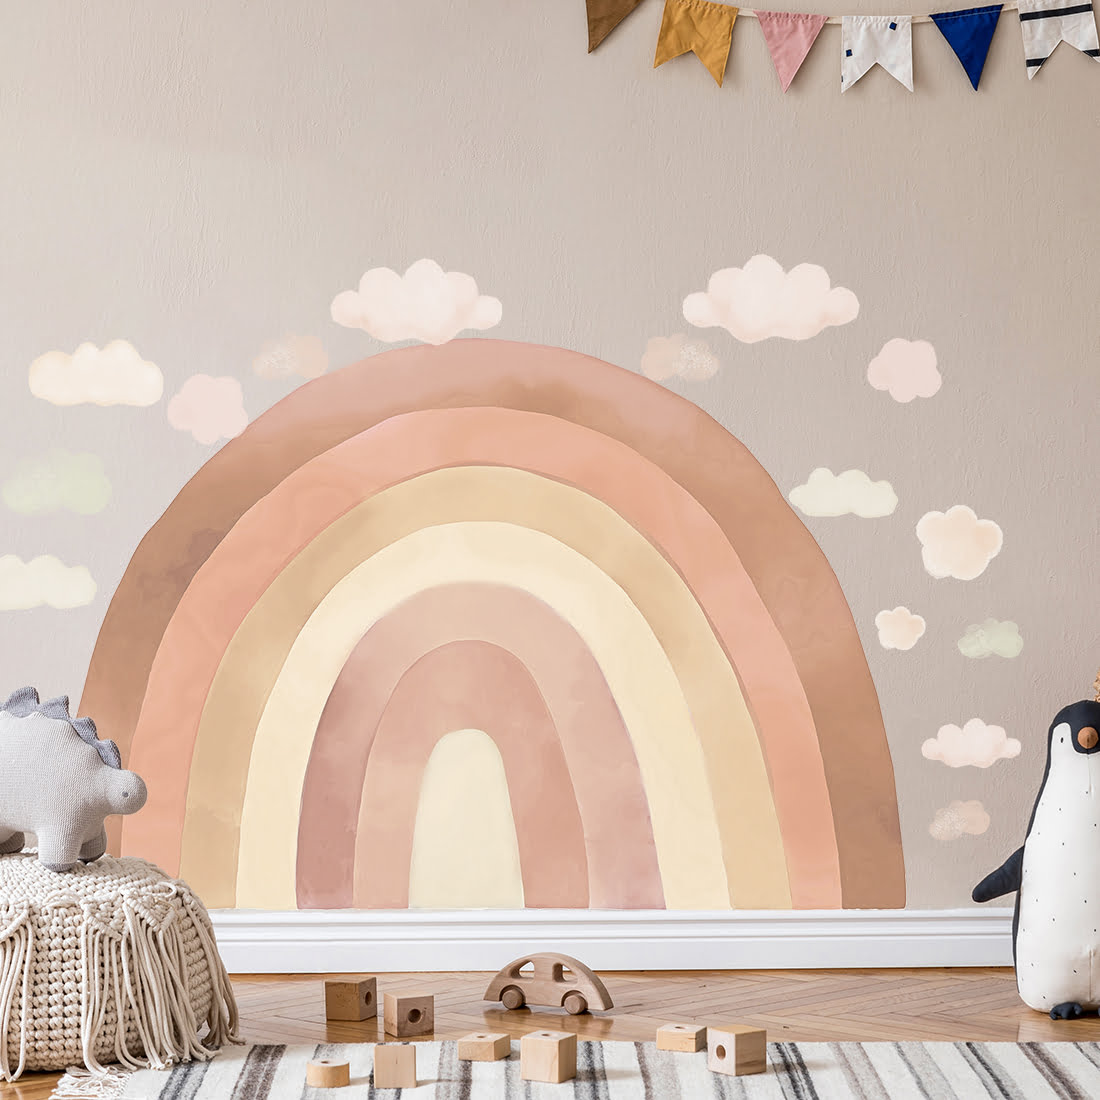 Kinderzimmer mit Wandsticker Regenbogen in beige Tönen mit bunten Wolken mit Grössen angezeigt